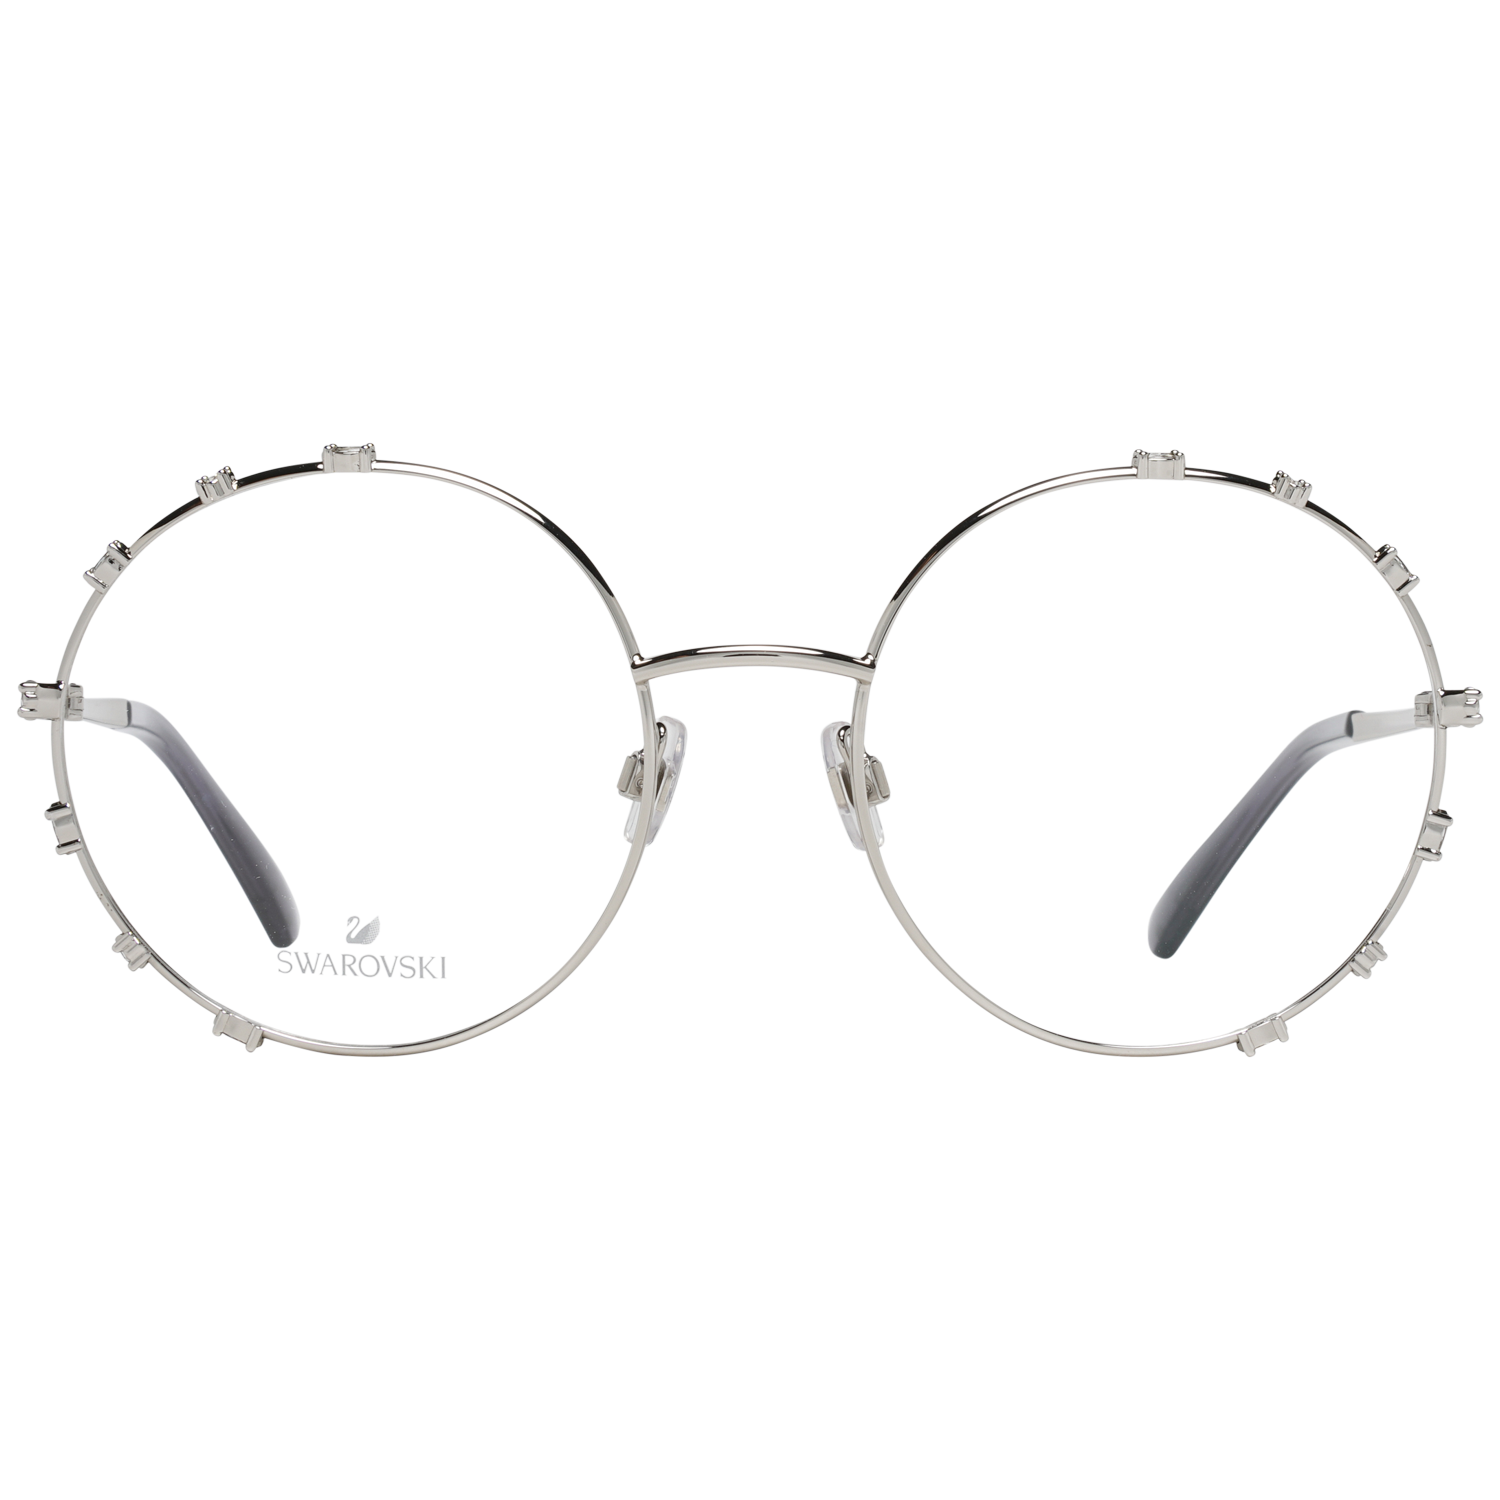 Swarovski Frames Swarovski Women Glasses Optical Frame SK5380 016 57 Eyeglasses Eyewear UK USA Australia 